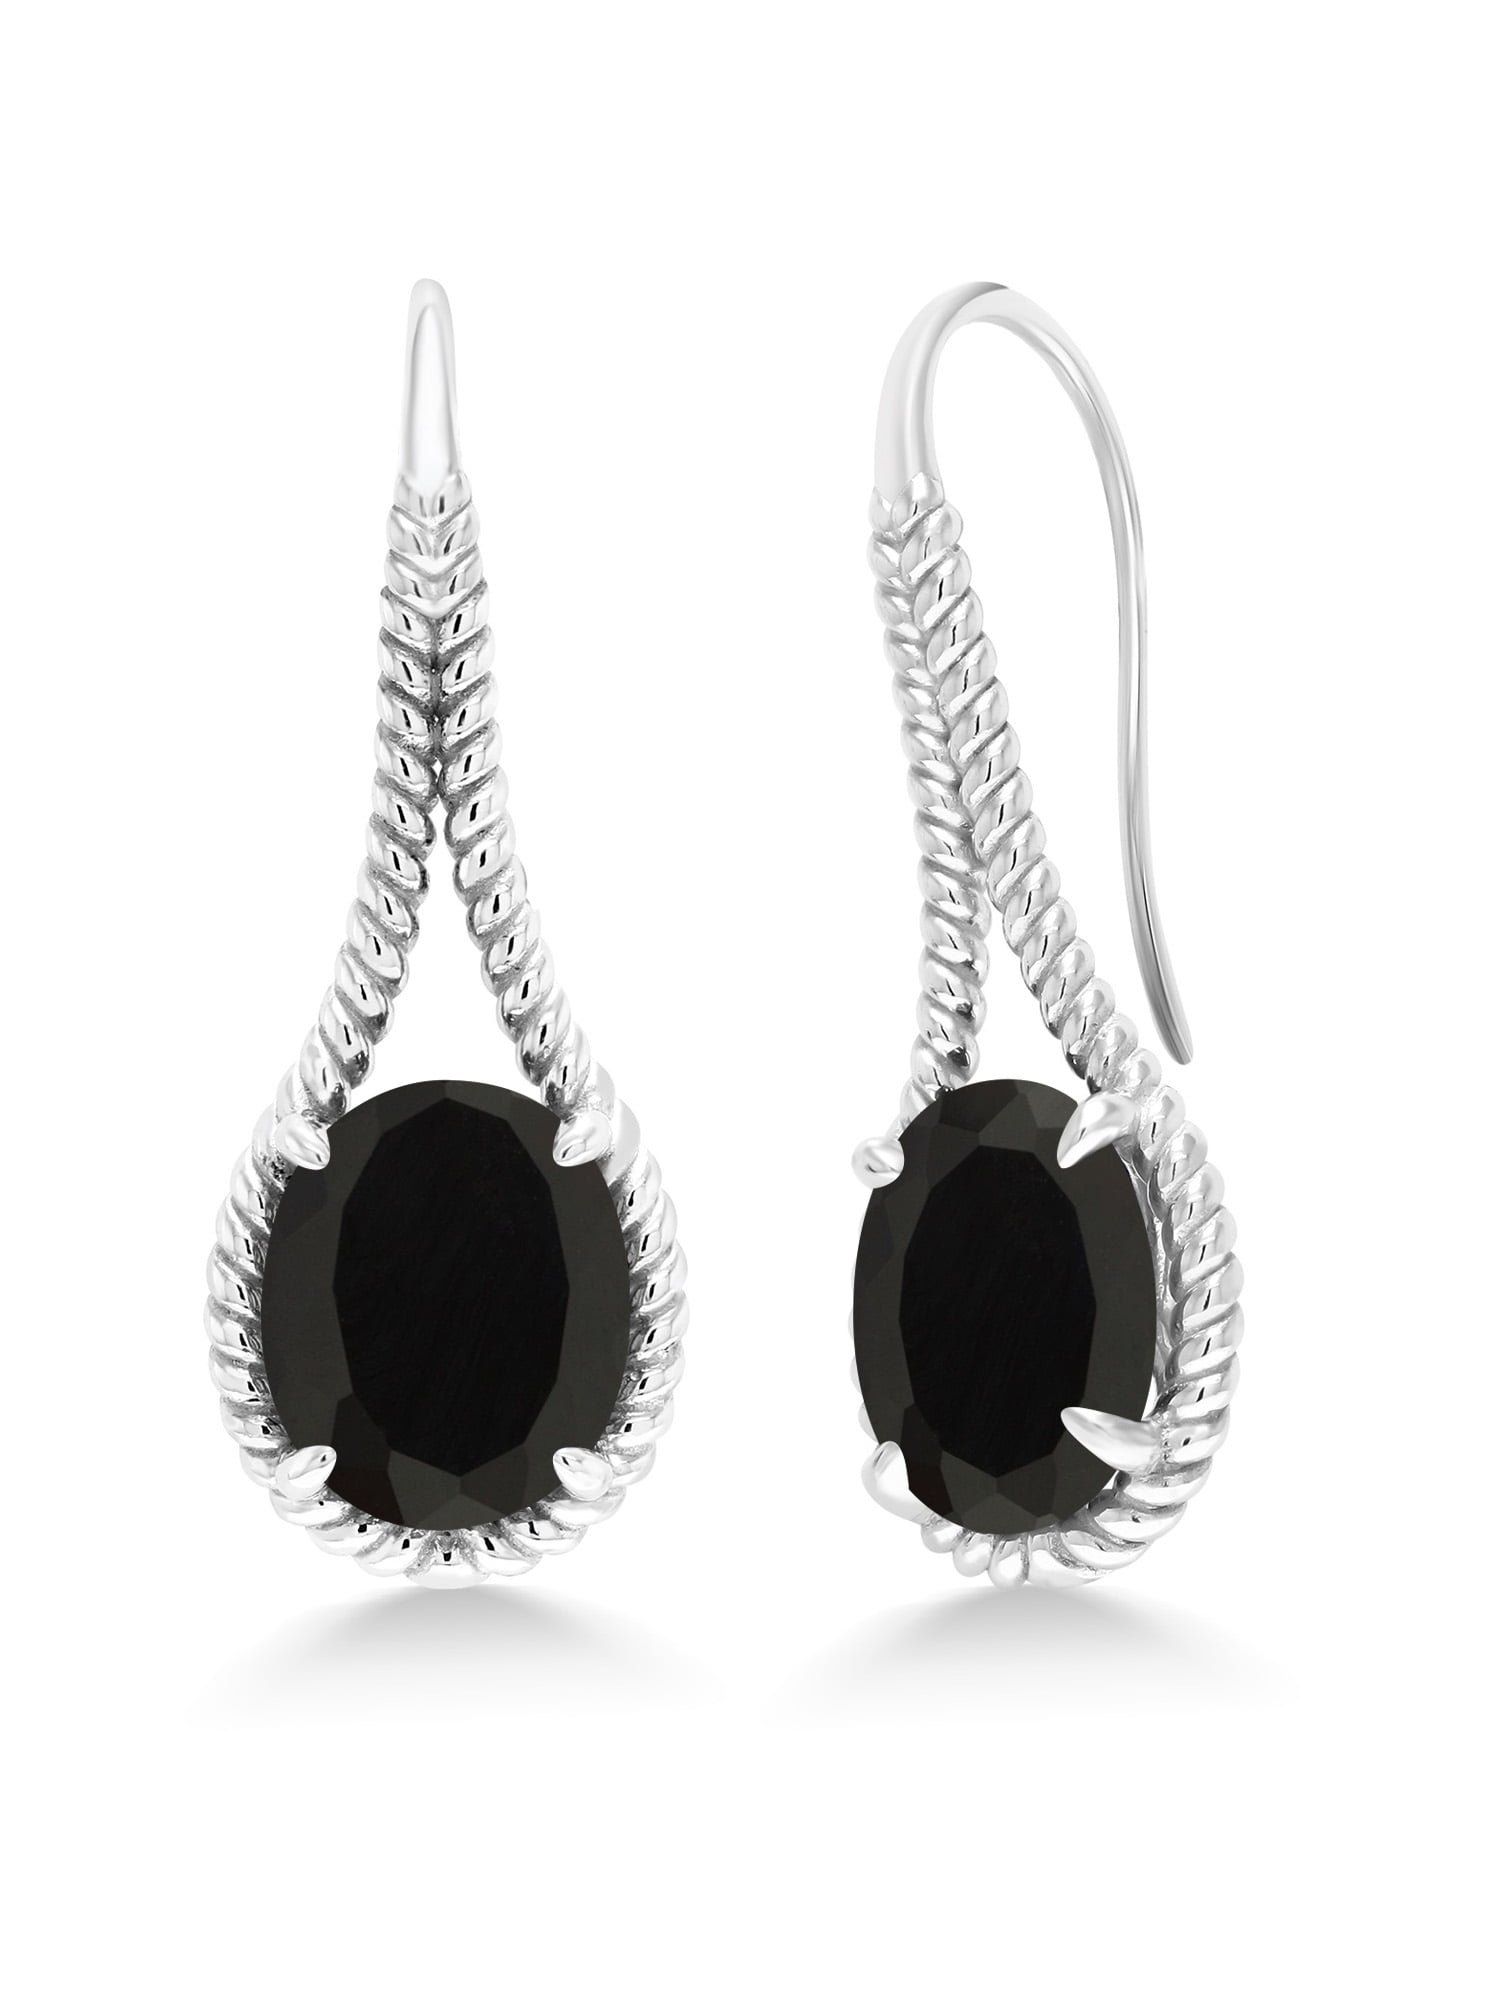 Black ONYX Gemstone Flower 925 Sterling Silver Stud Earrings Handcrafted 